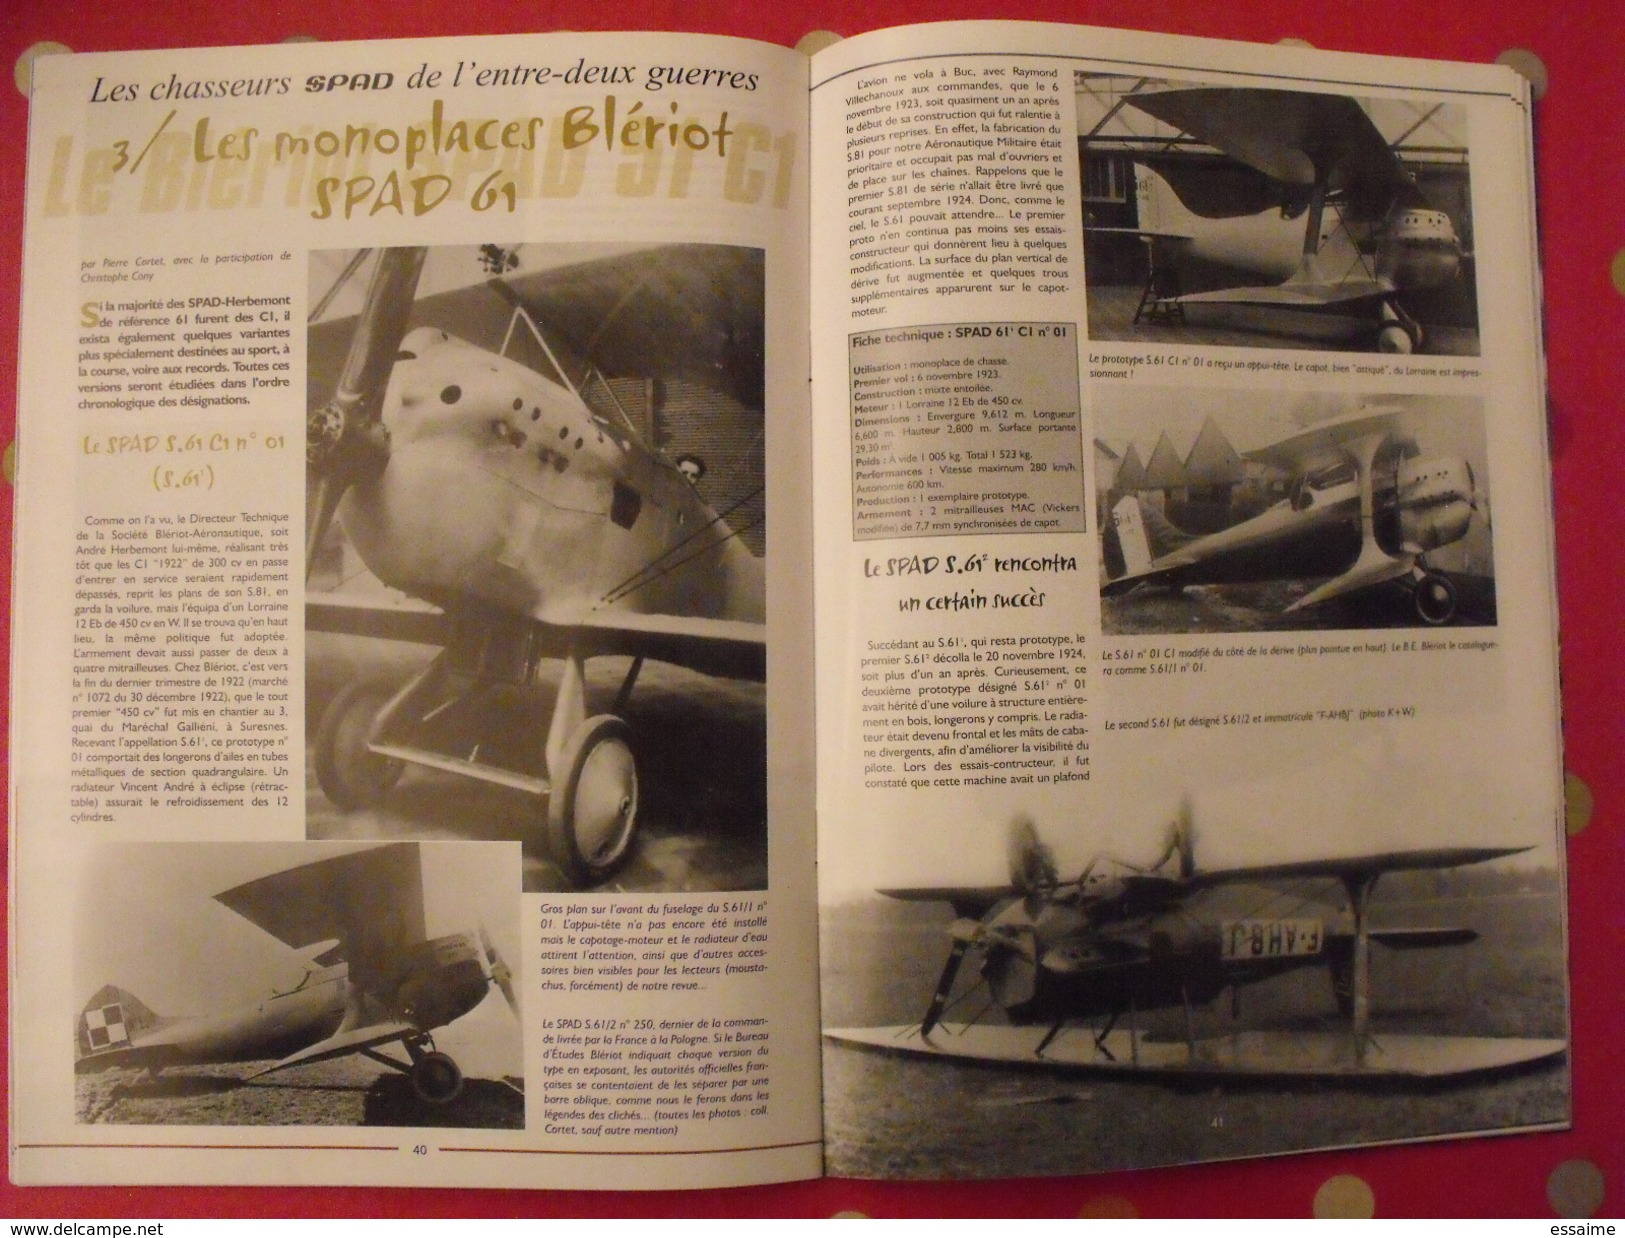 lot de 3 revues Avions. 2002-2003. toute l'aéronautique et son histoire. Aviation avion